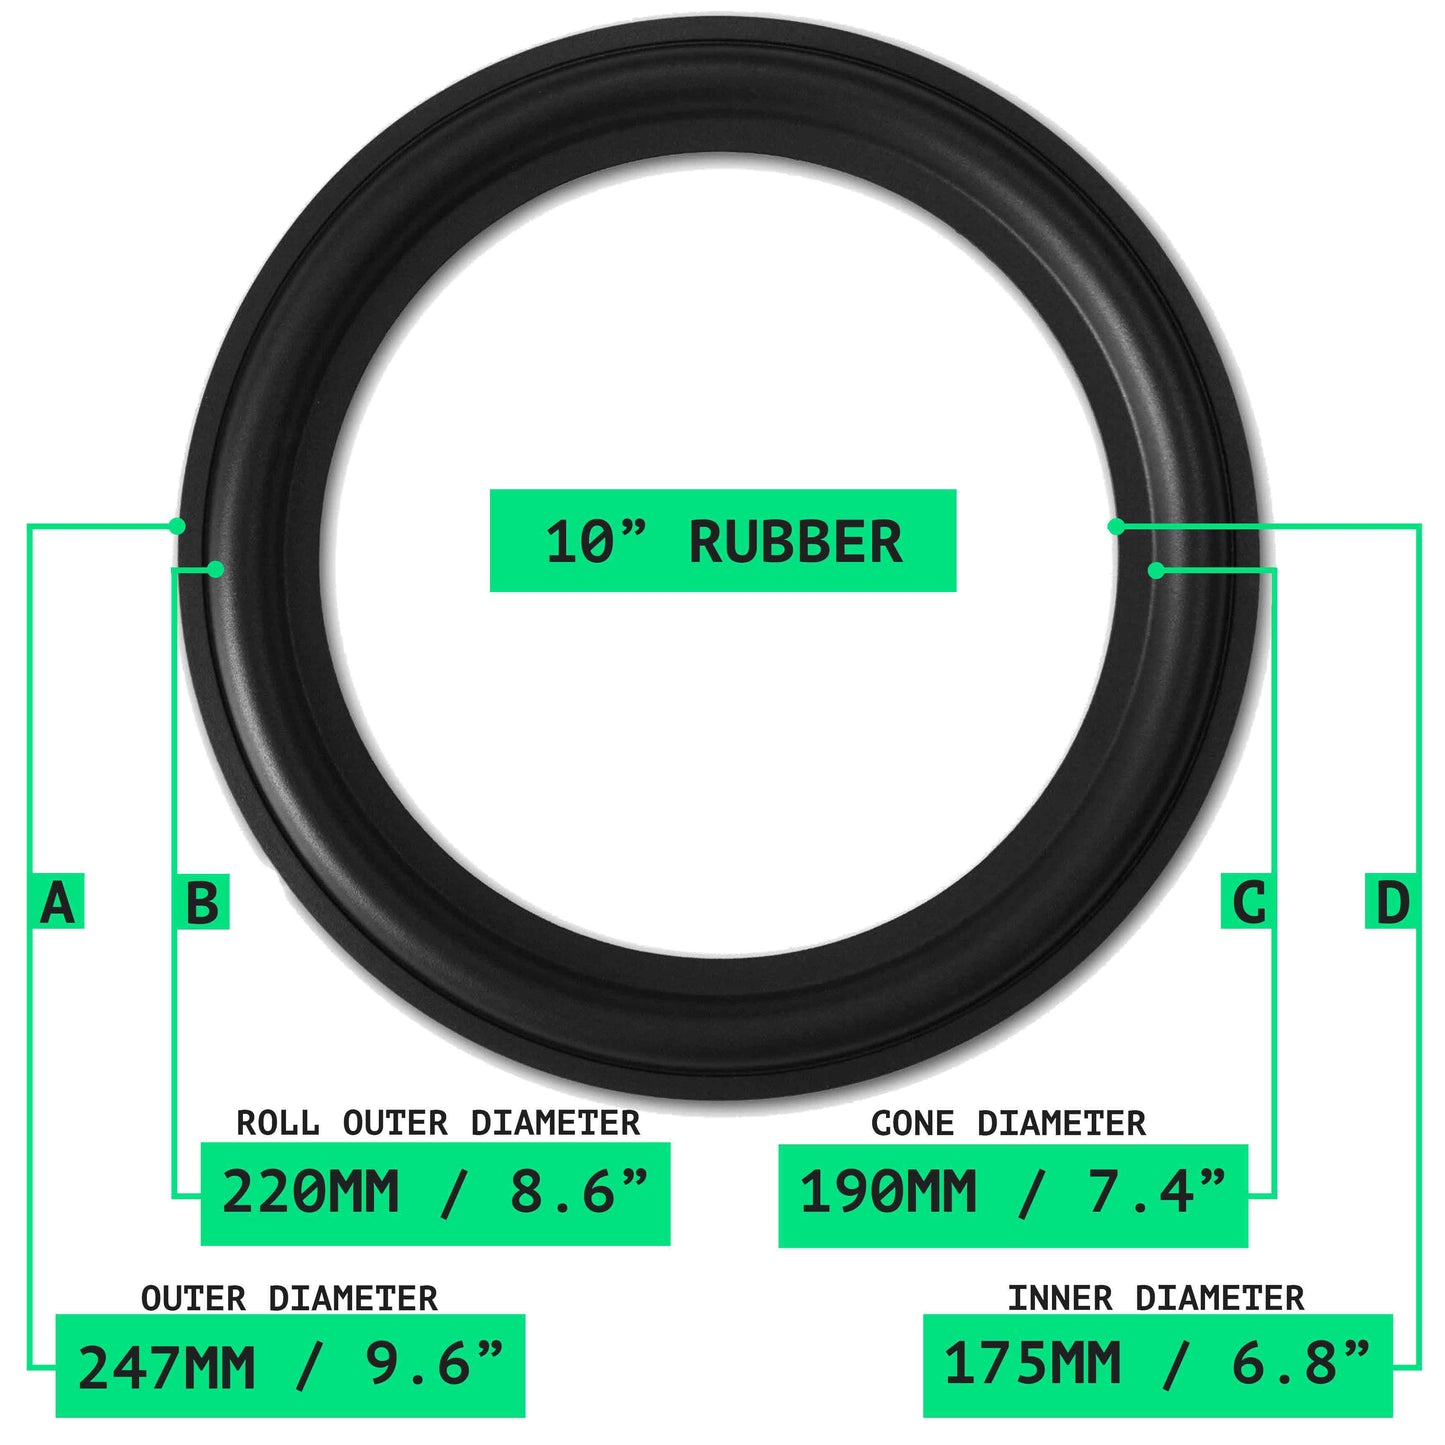 10" Rubber Repair Kit - OD:247MM ID:175MM